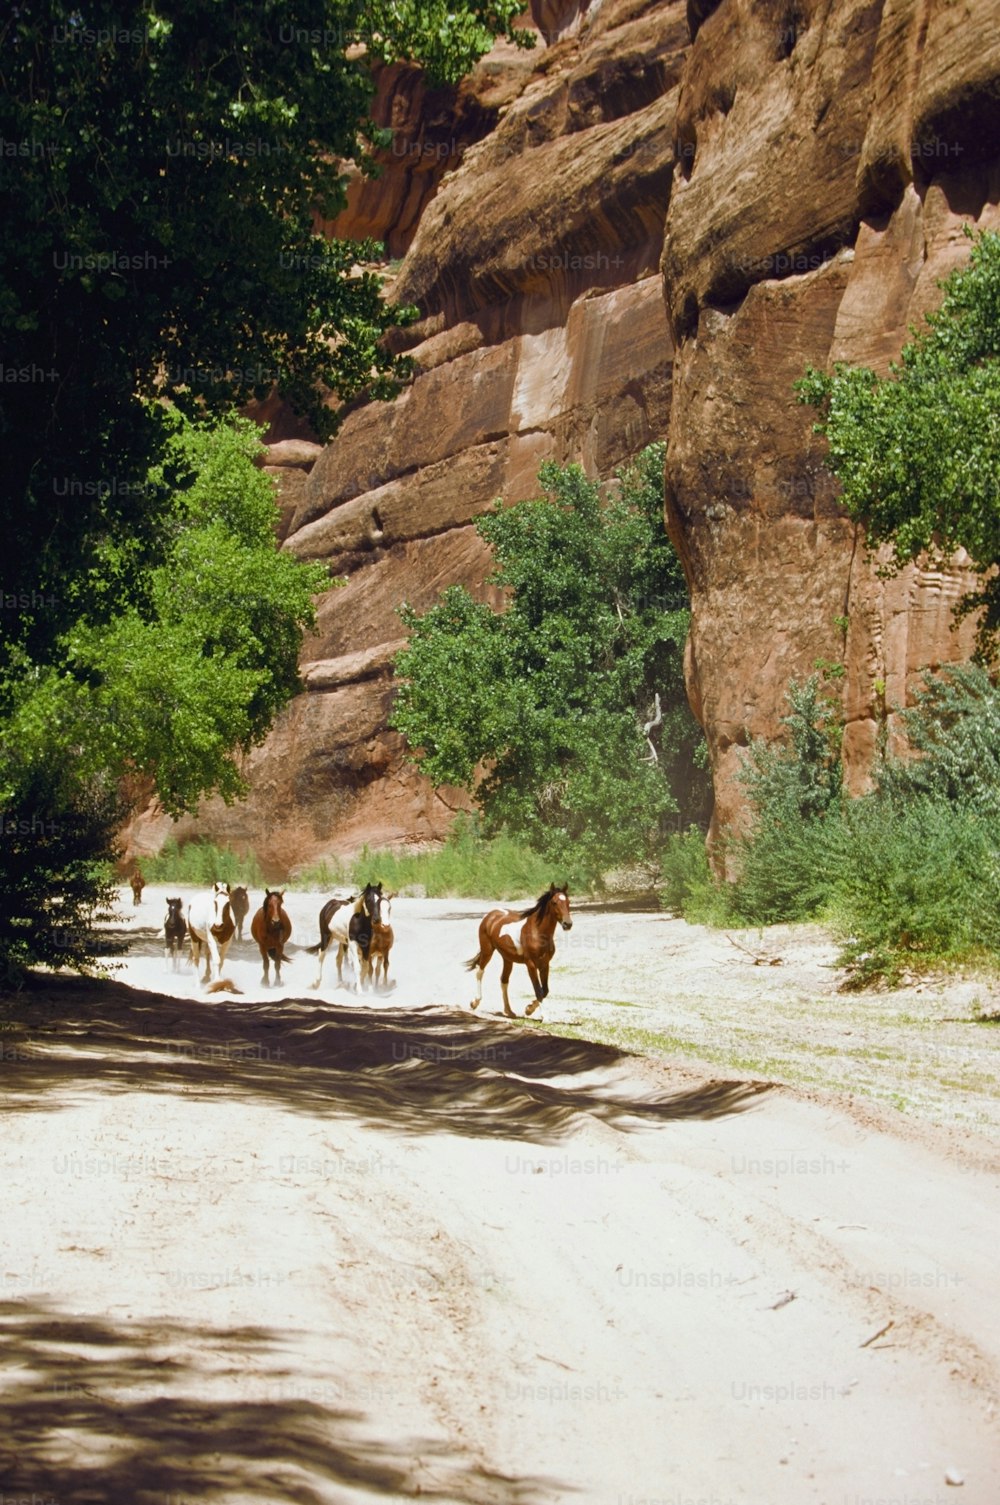 Un grupo de caballos caminando por un camino de tierra